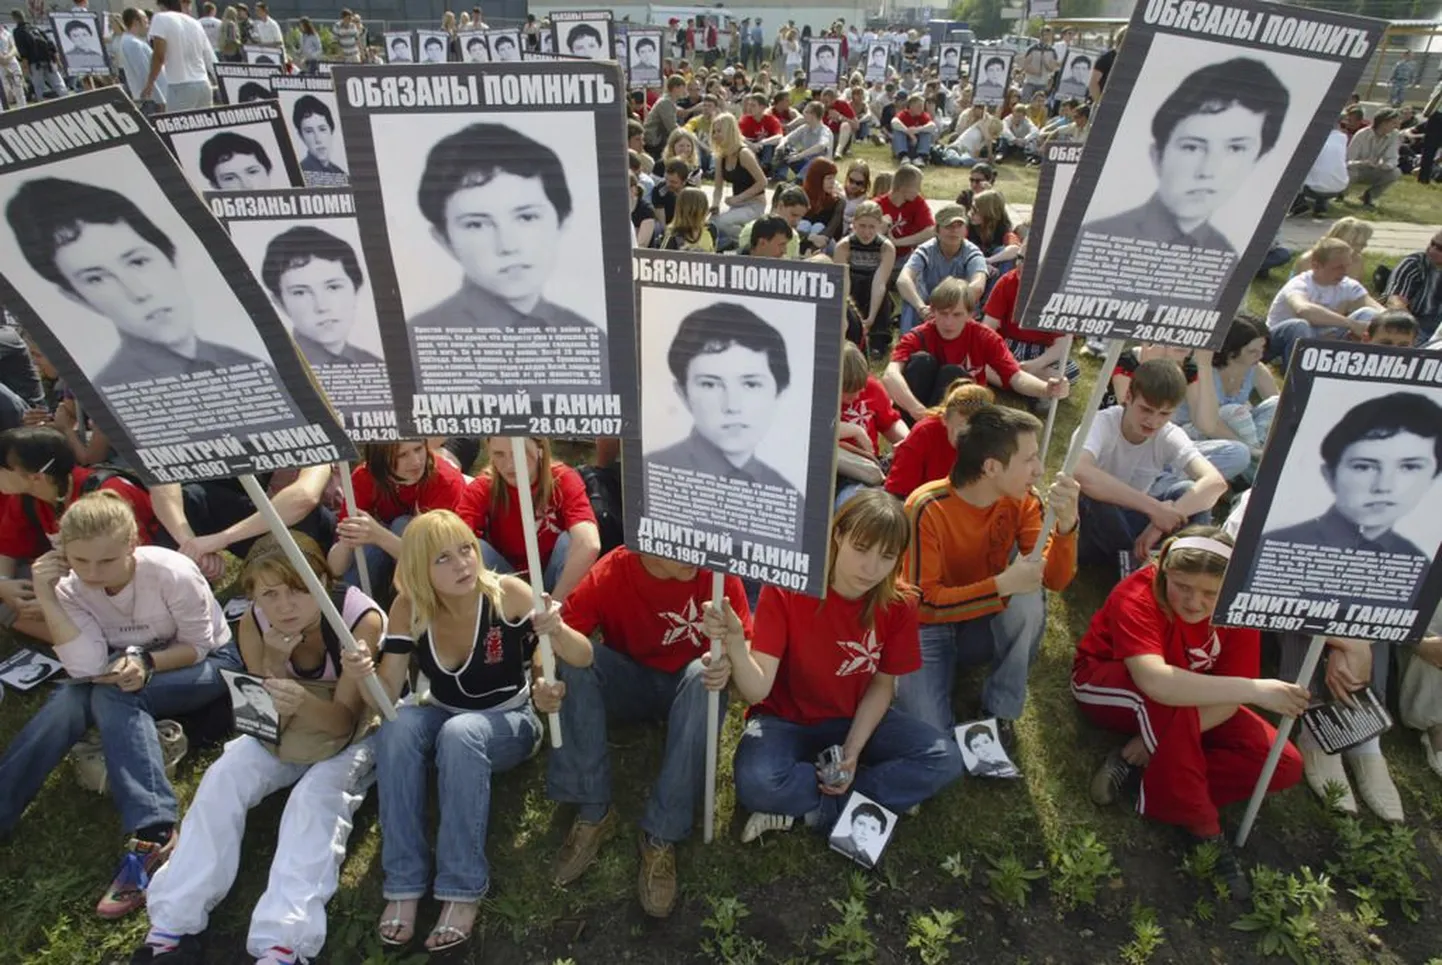 Našistid pronksööl hukkunud Dmitri Ganini pildiga plakatitega Moskvas 2008. aastal.